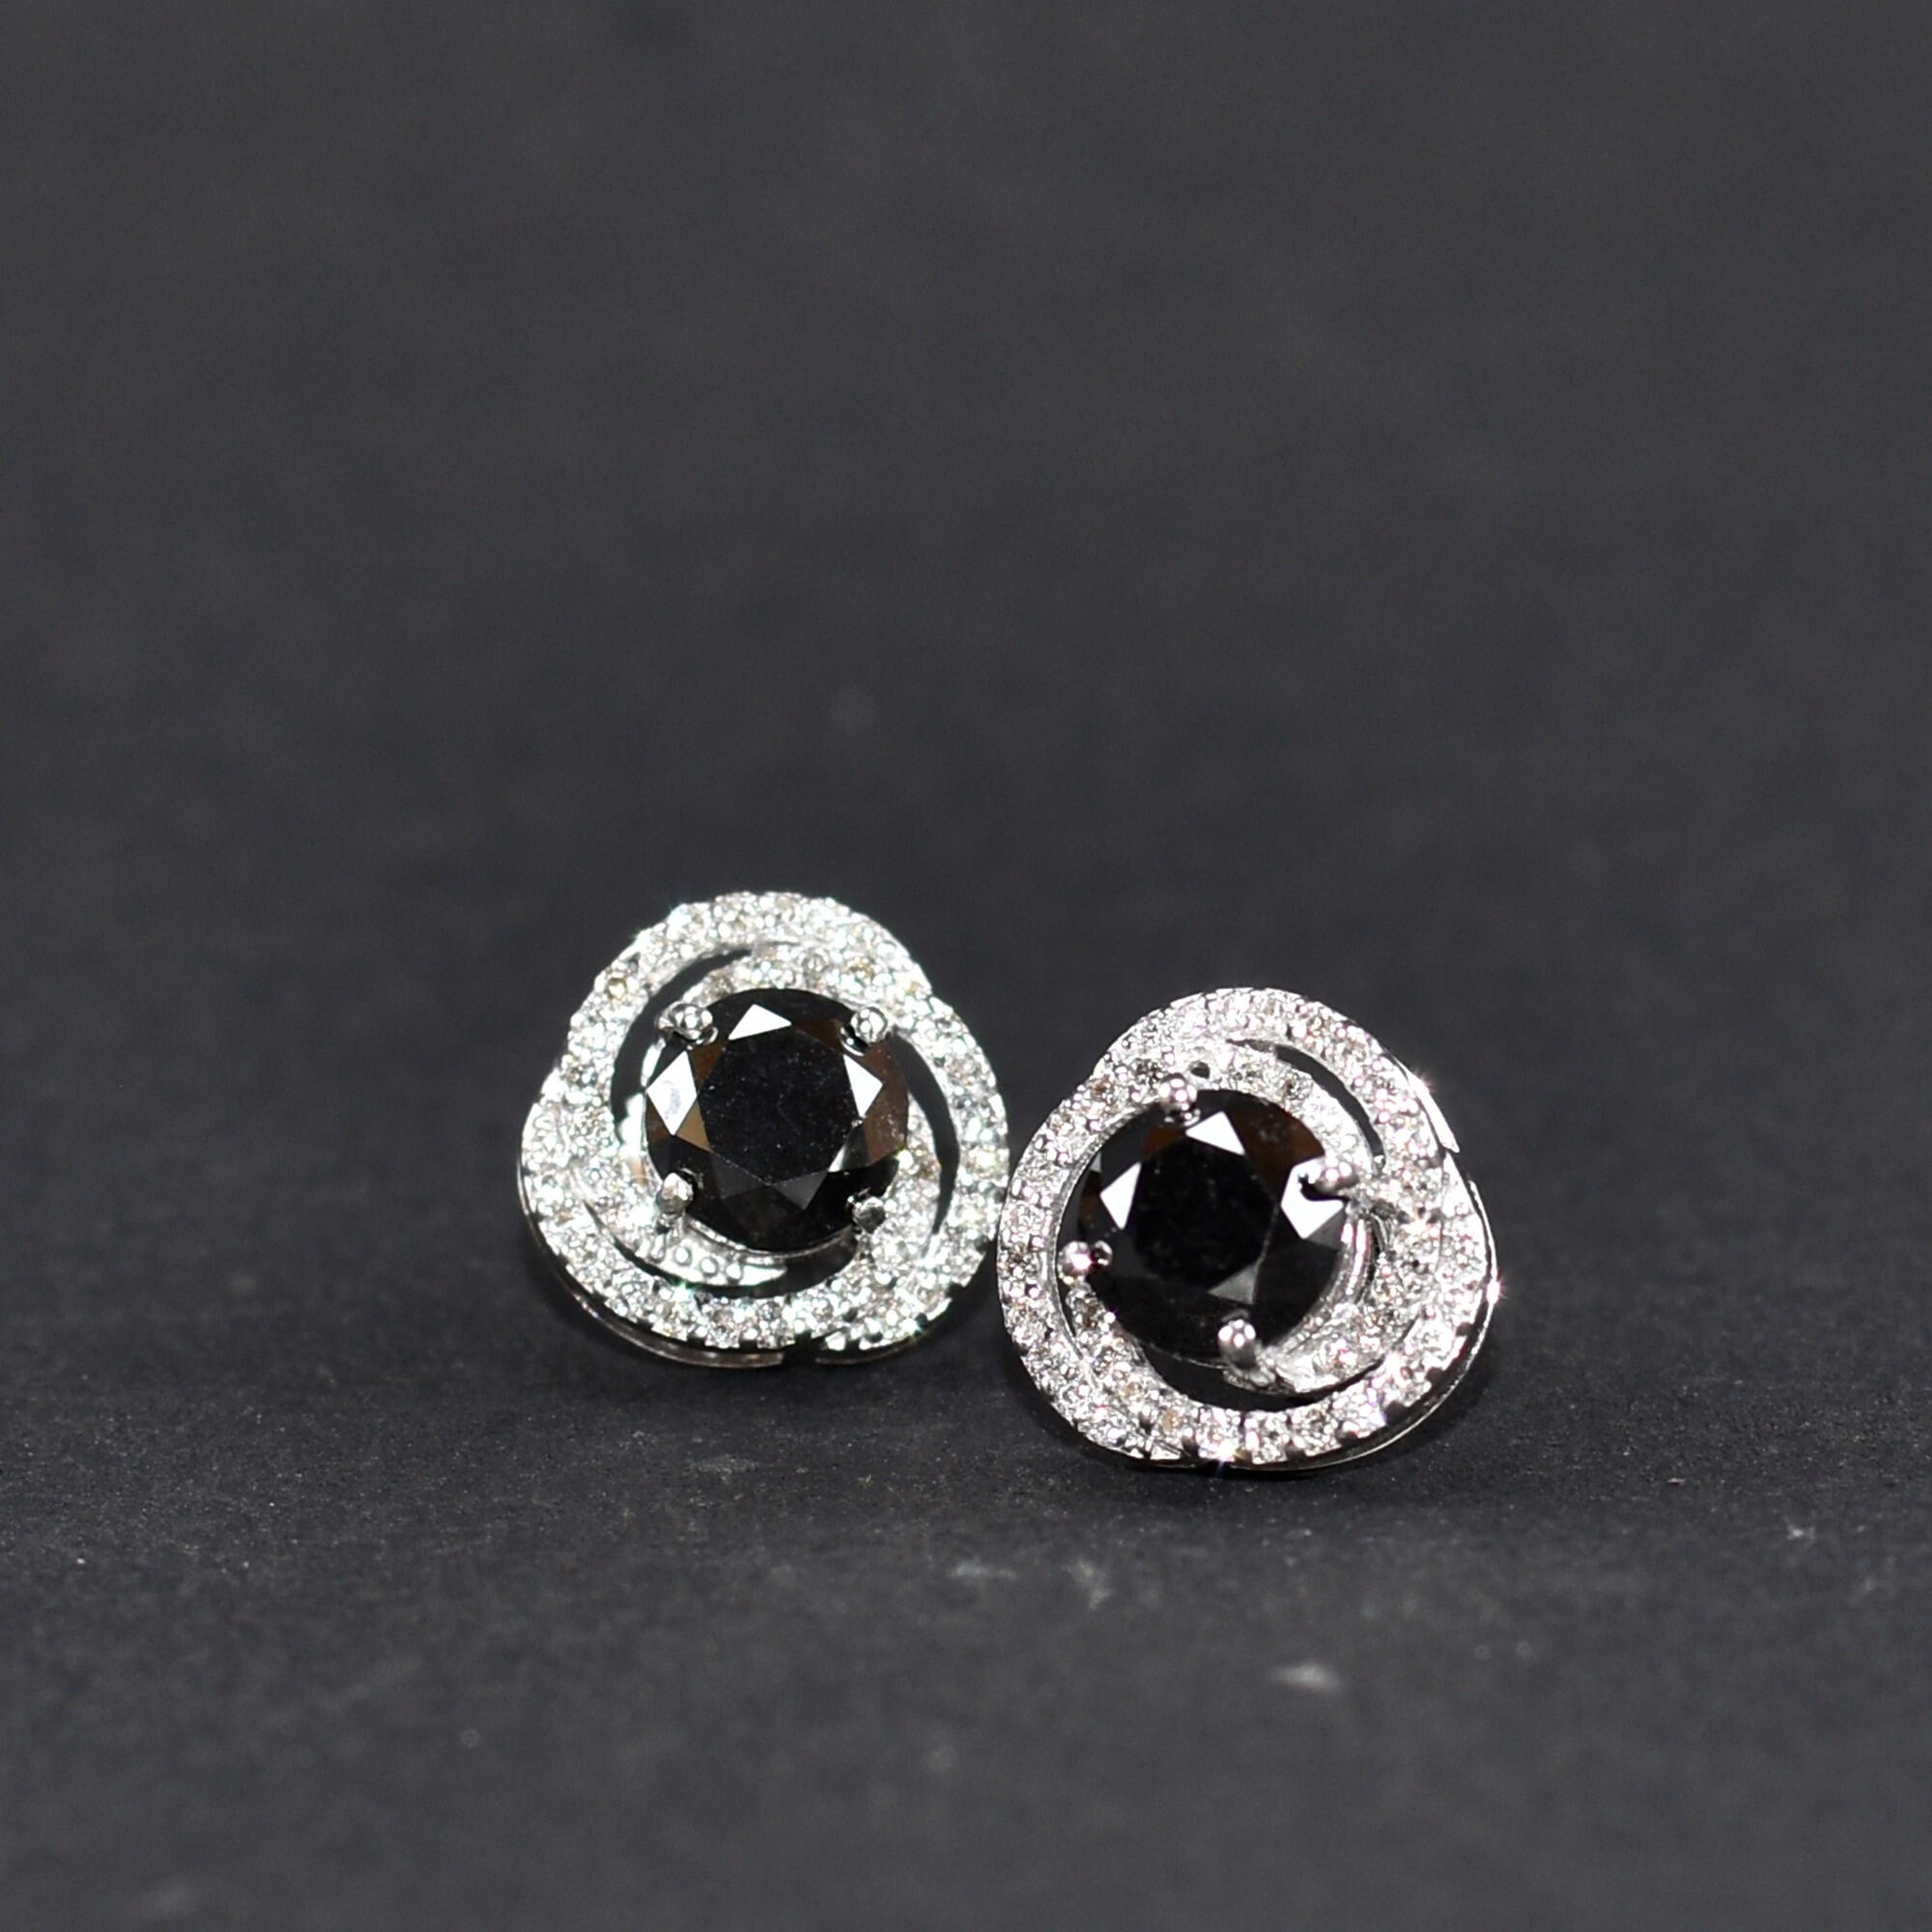 100 CT TW Black Diamond Stud Earrings in 14K White Gold  Peoples  Jewellers